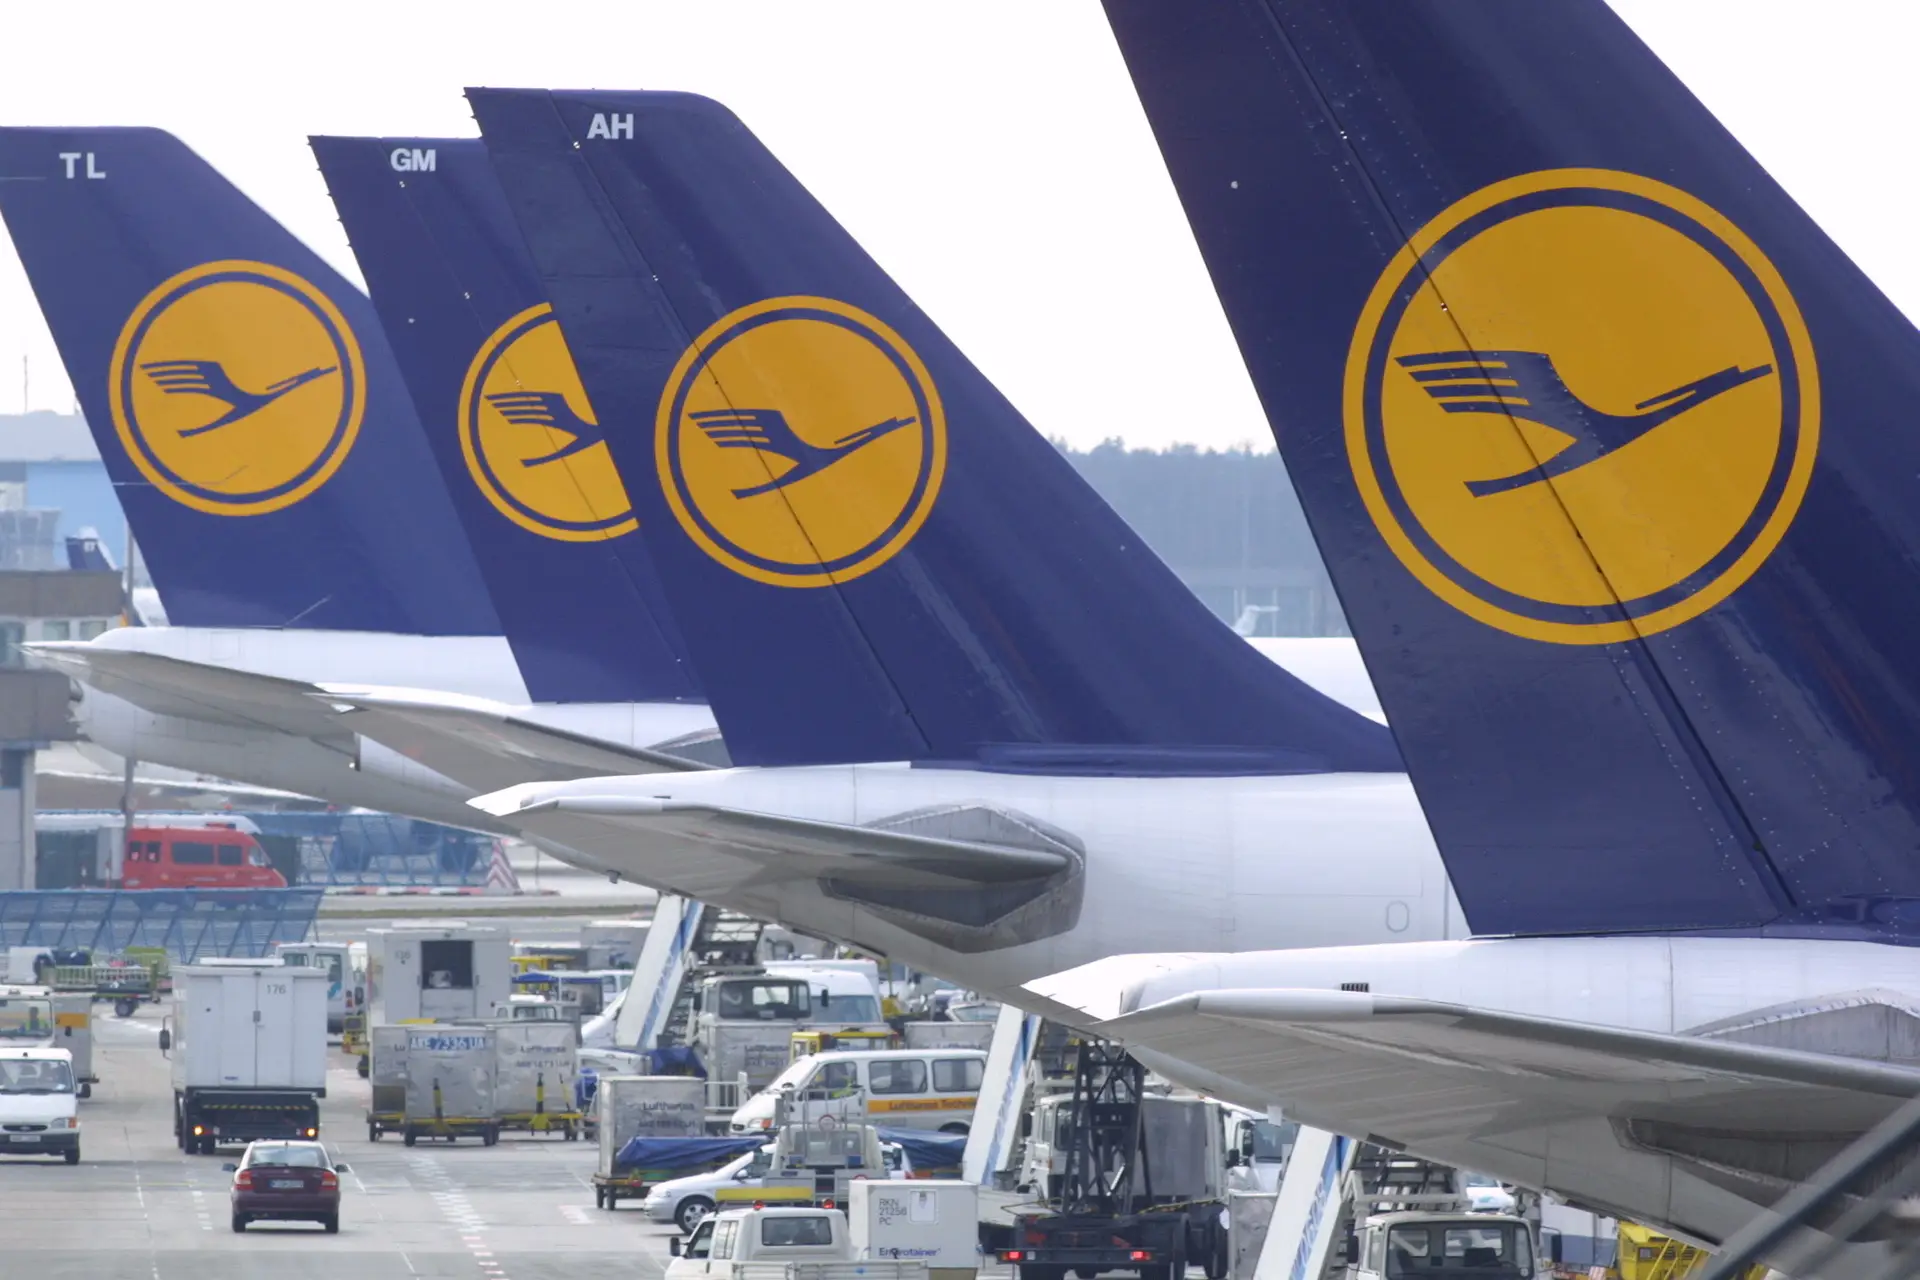 Vai voar pela Lufthansa esta sexta-feira? Atenção que há greve